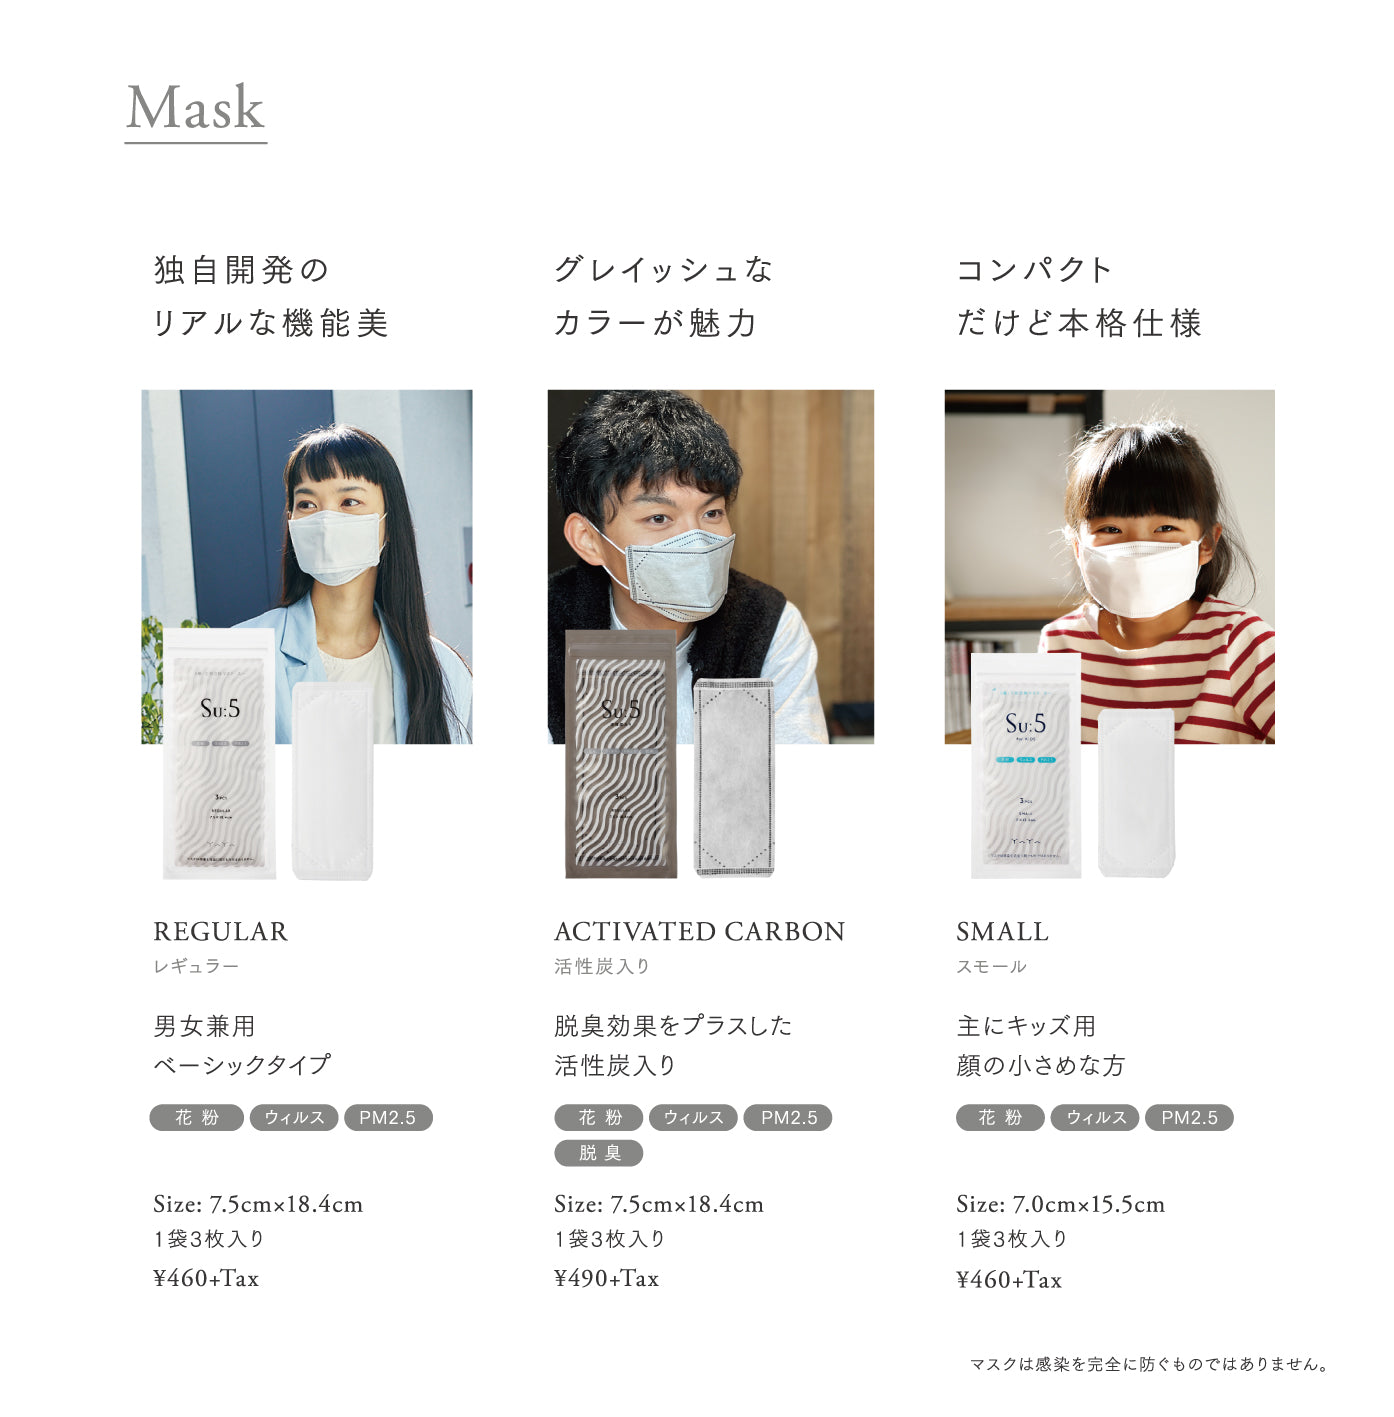 Suː5 Mask SMALL　3pcs